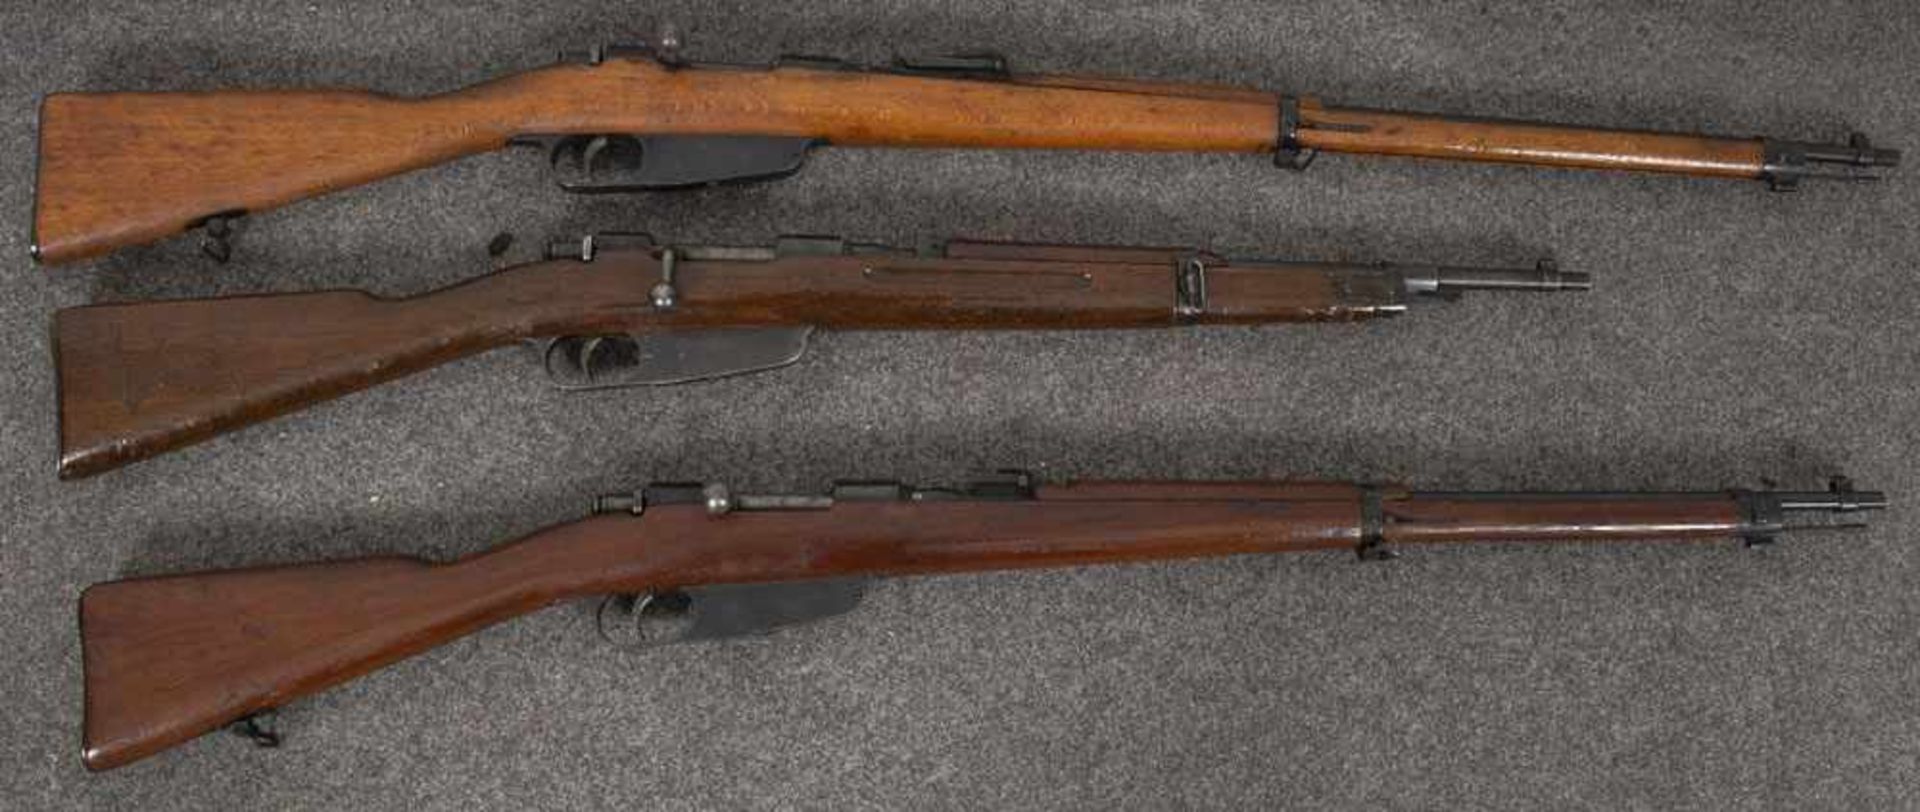 Drei Deko-Gewehre, Modell 91, Nr. OR-W4421 / Modell 91/41, Nr. Q7818 / Modell 1938, Nr. RS9351, L=